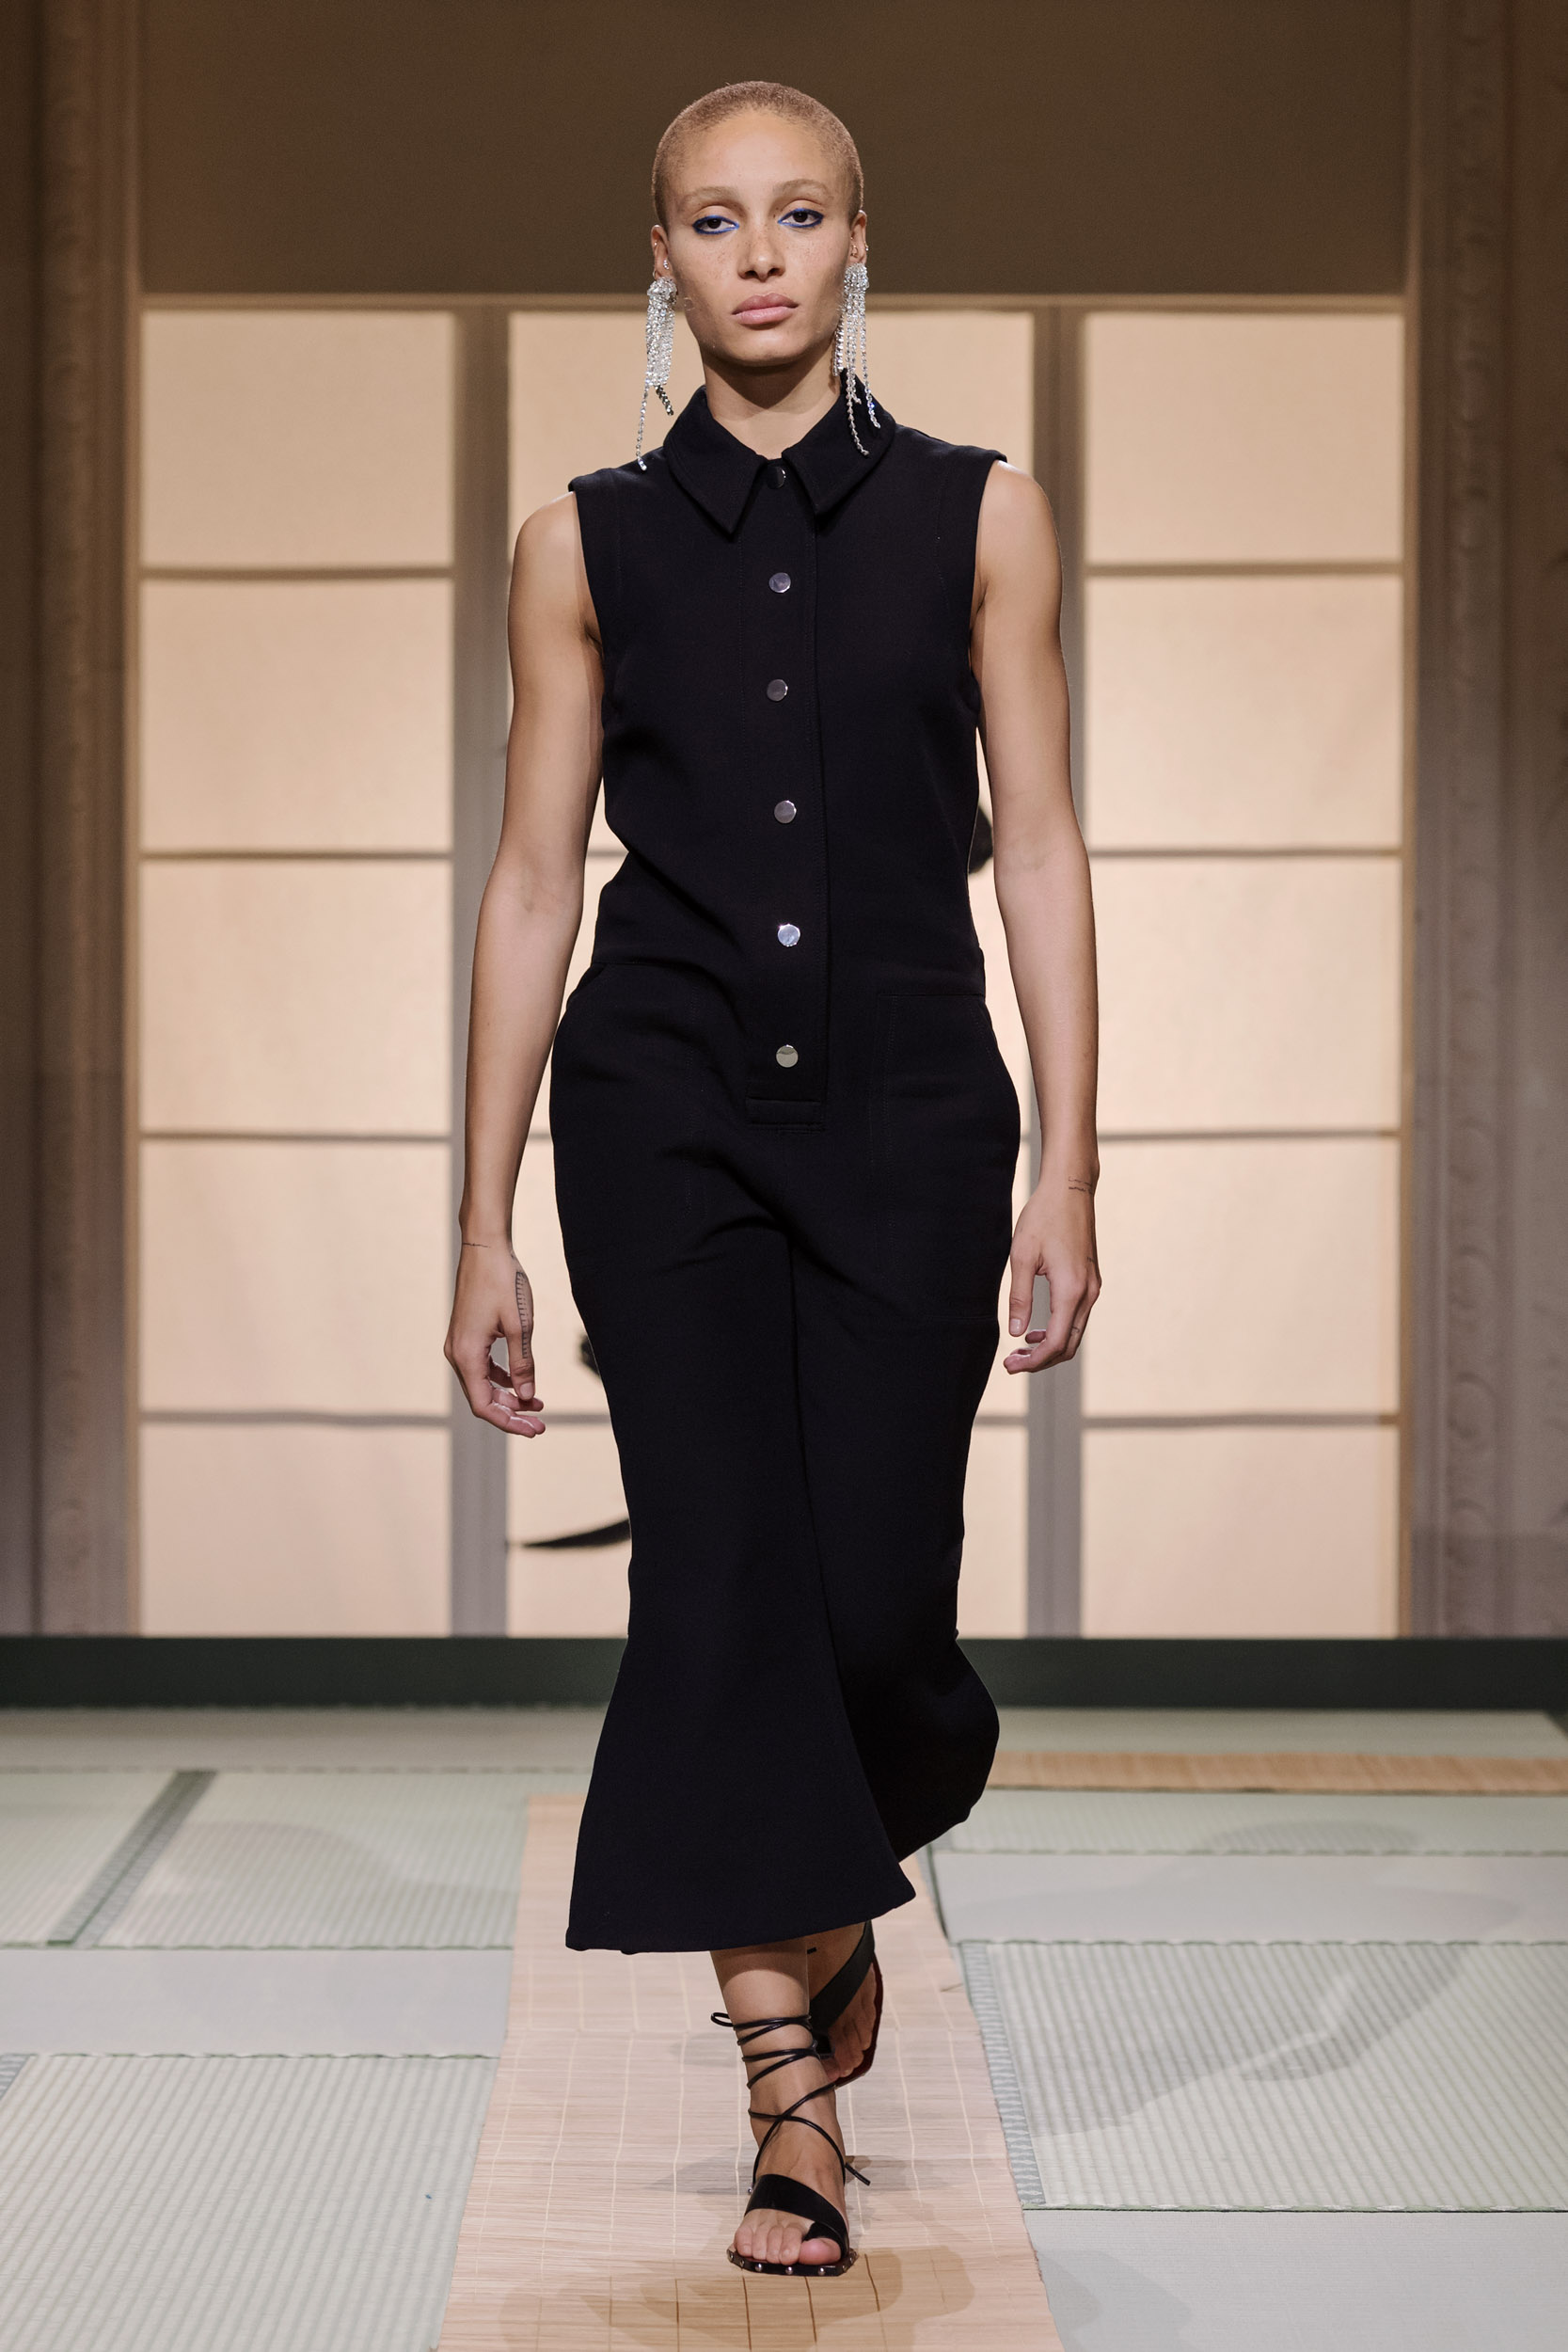 Fashionista Châu Bùi, Kelbin Lei diện nguyên set đồ H&M đến tham dự Paris Fashion Week